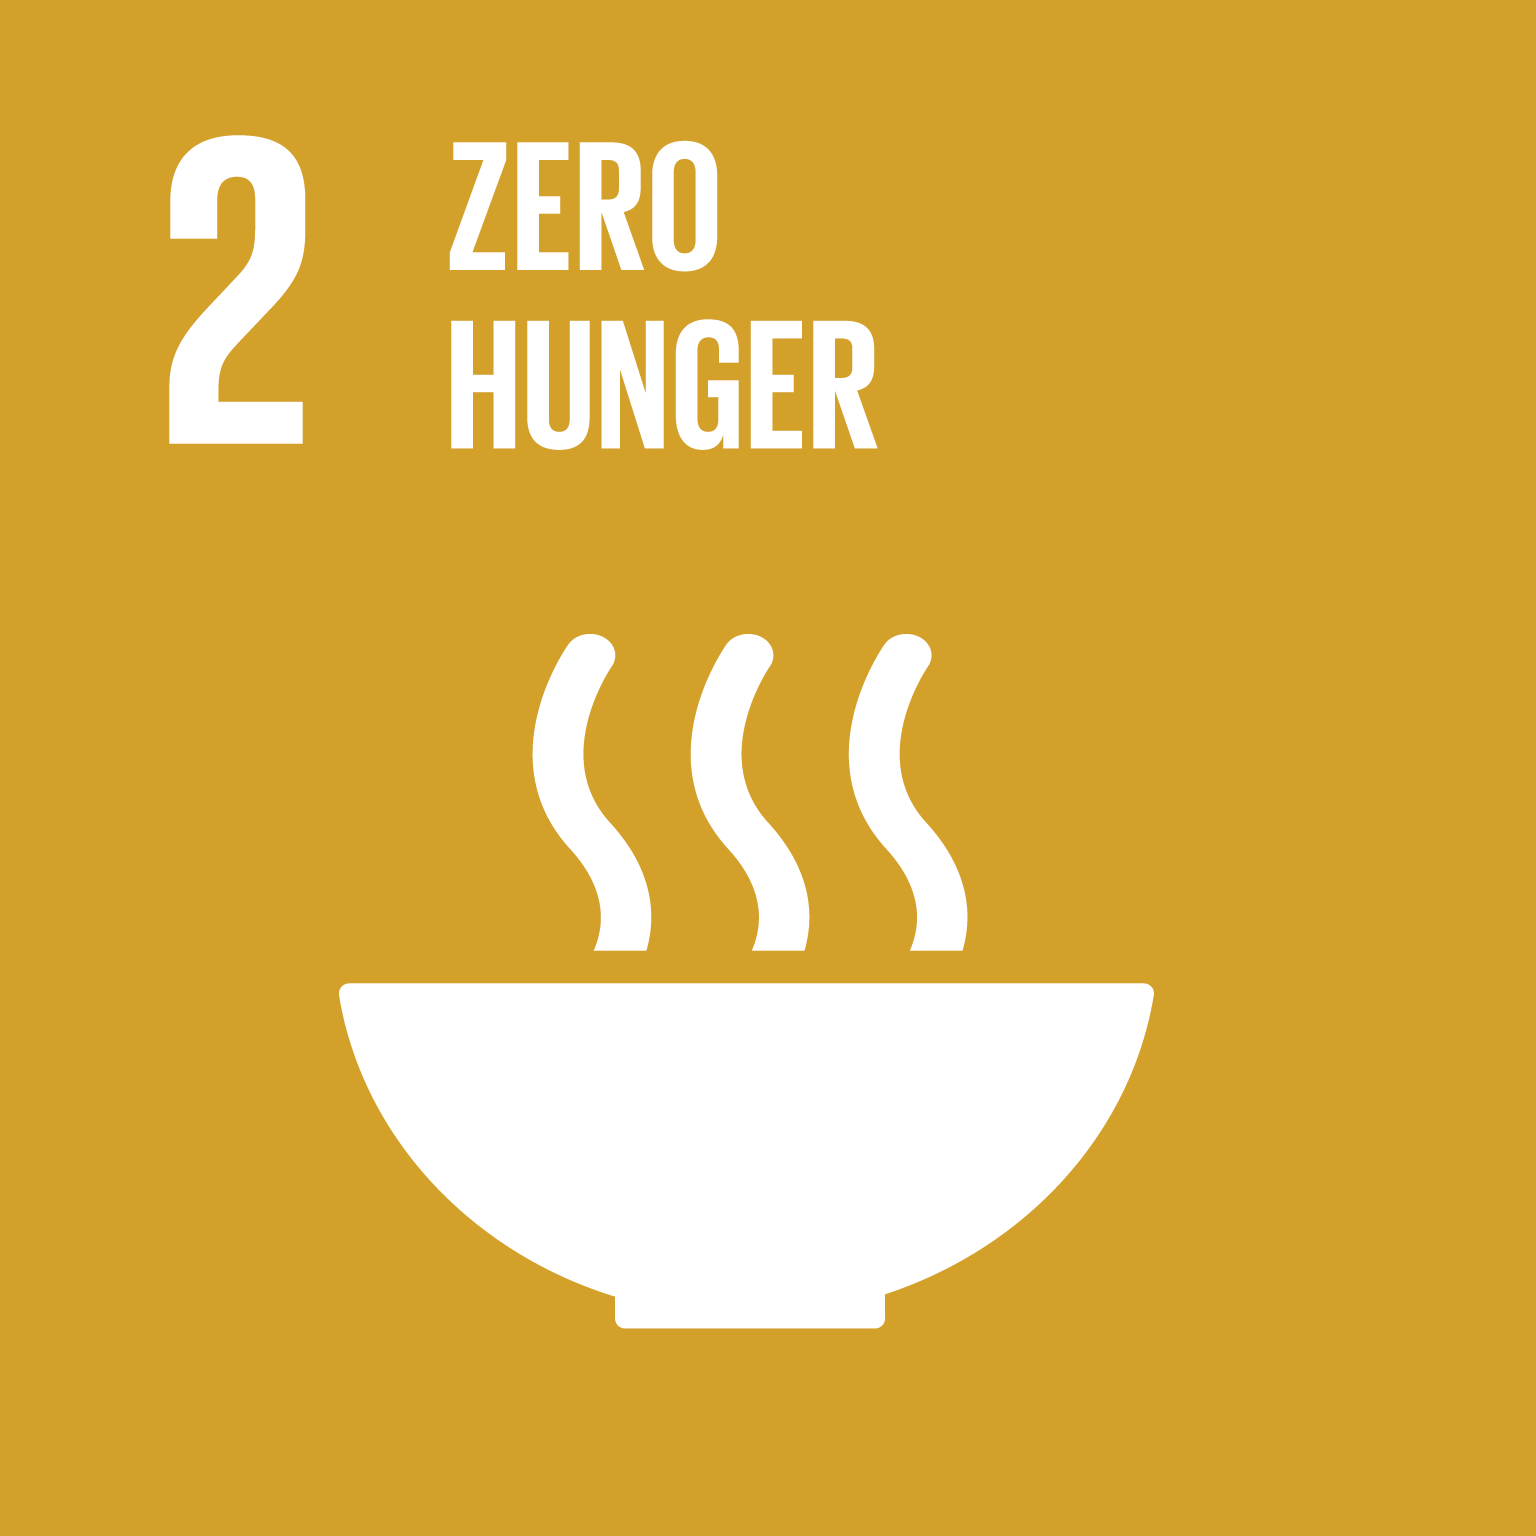 Zero hunger, goal 2.